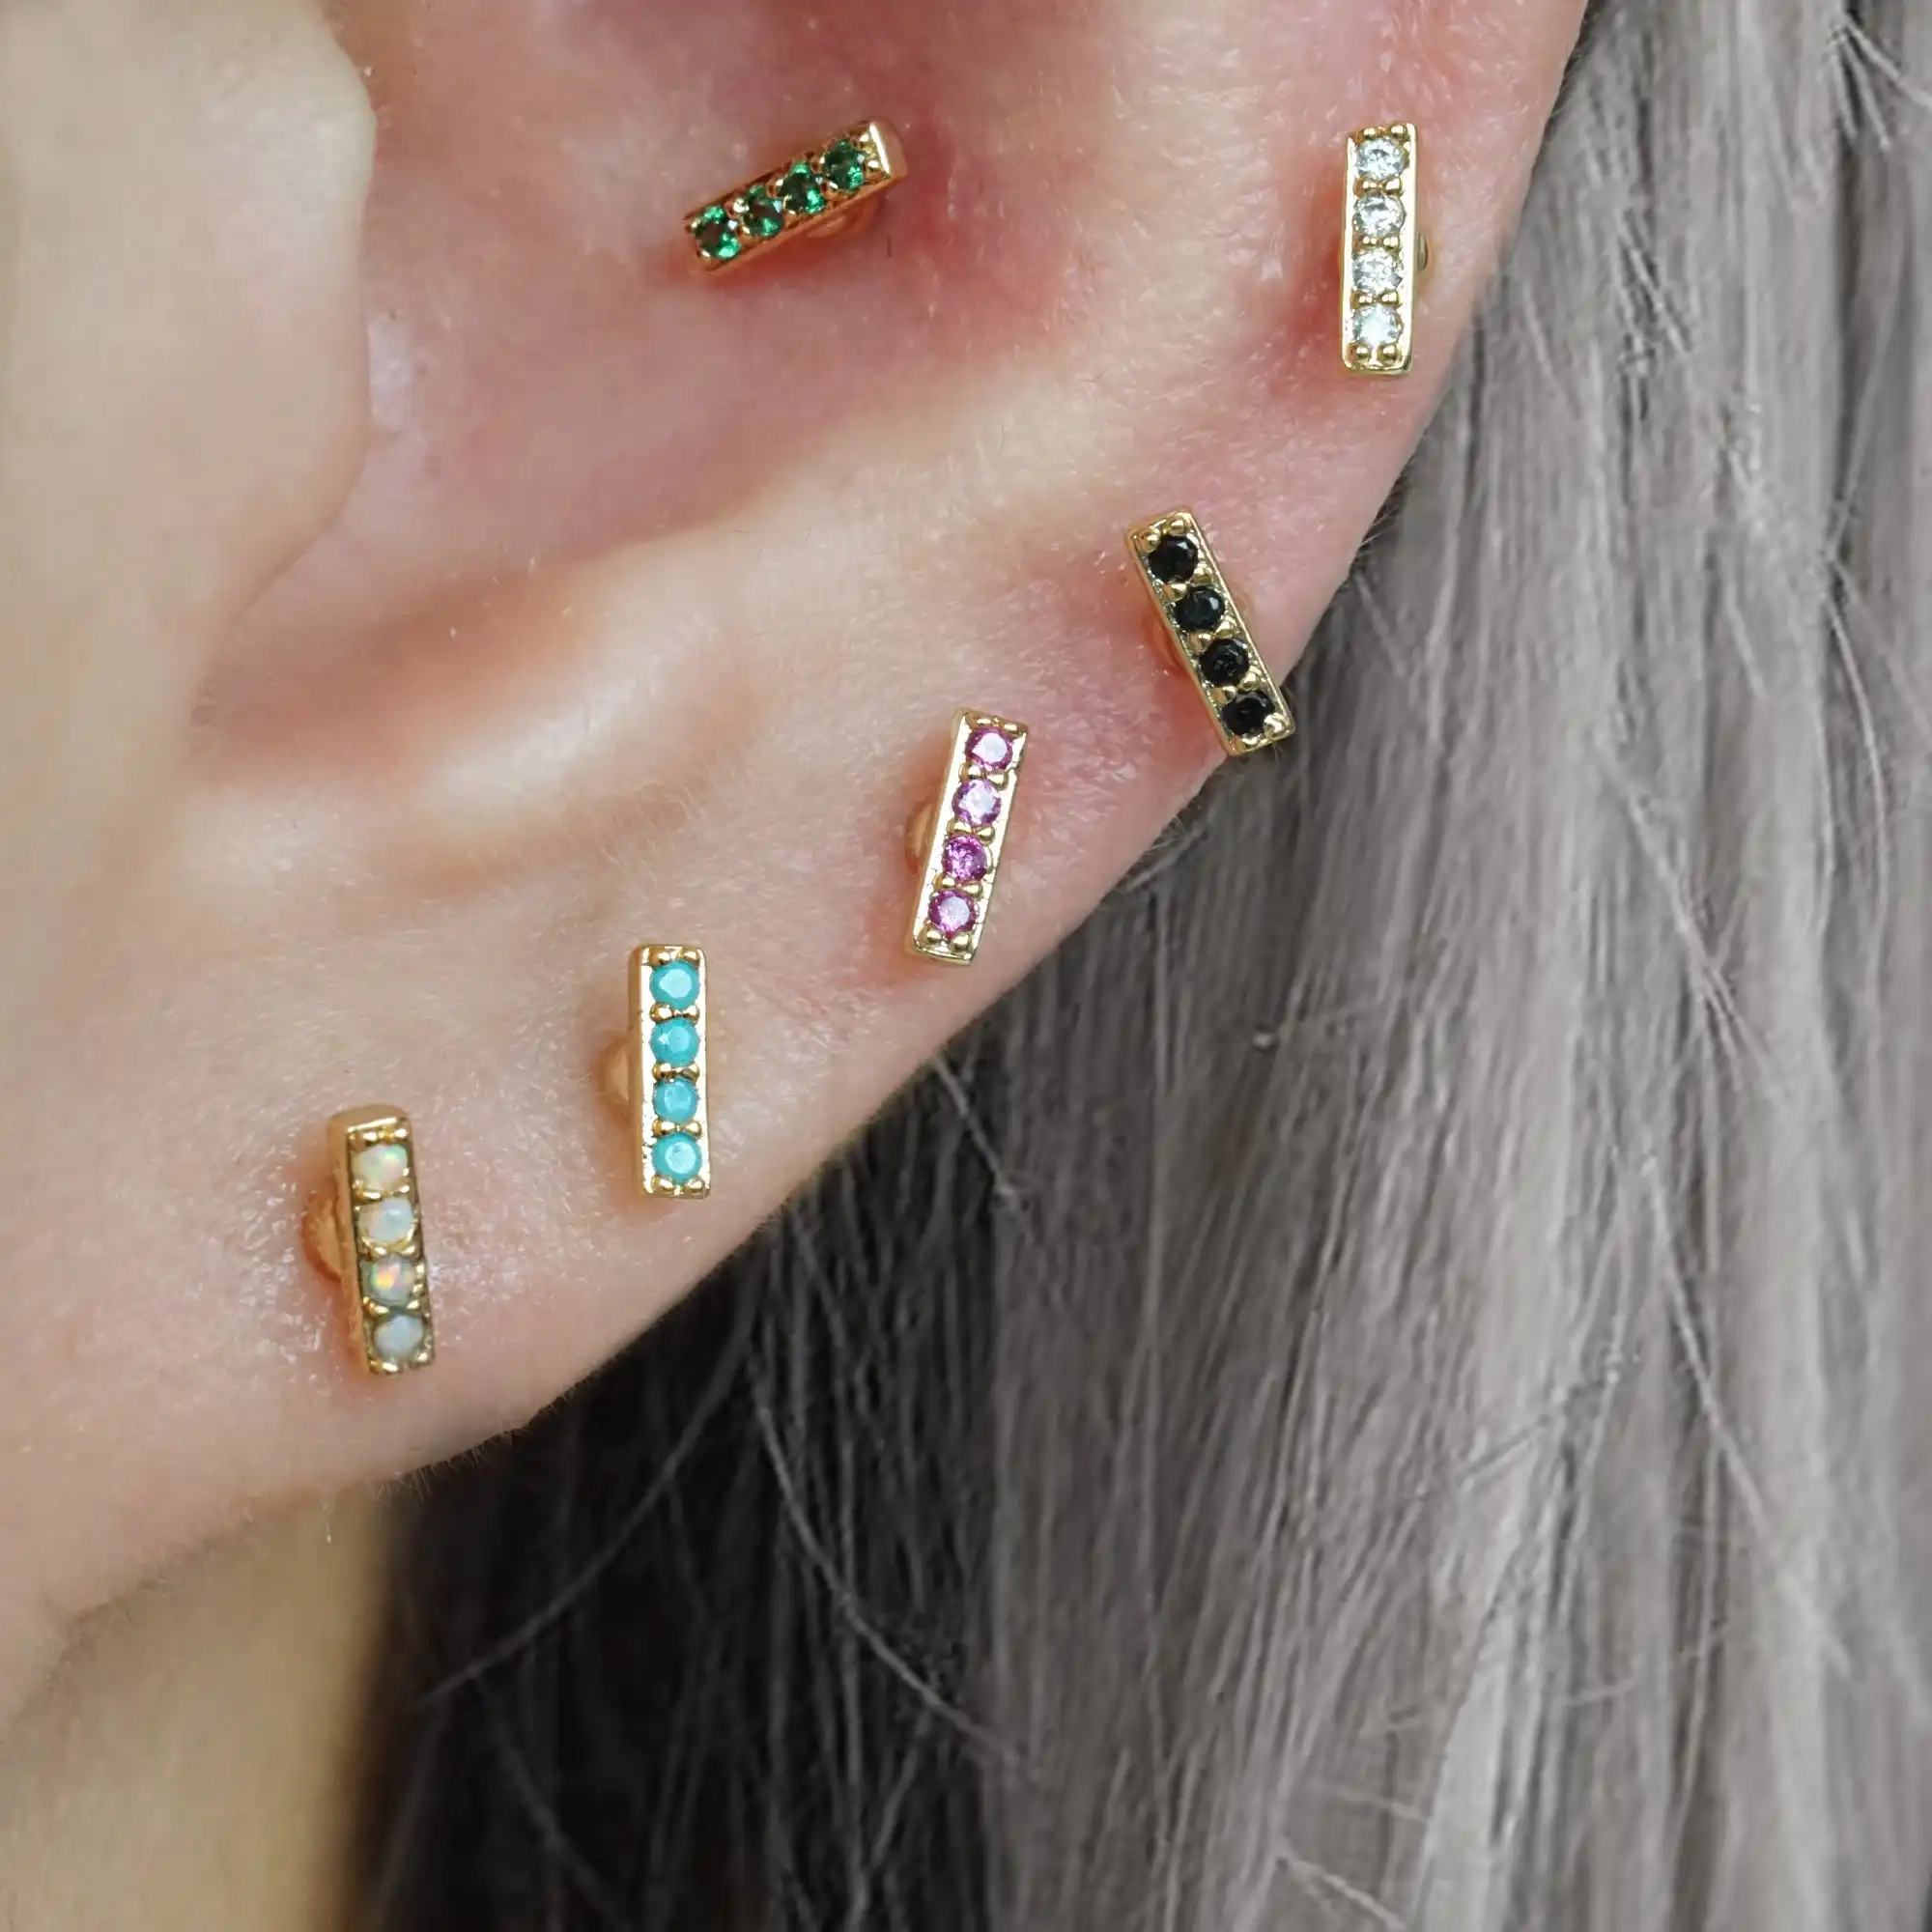 Studs Earrings Pierced Jewelry Women 16g 18g 20g Emerald Green Silver 925 Piercing Stud Earring